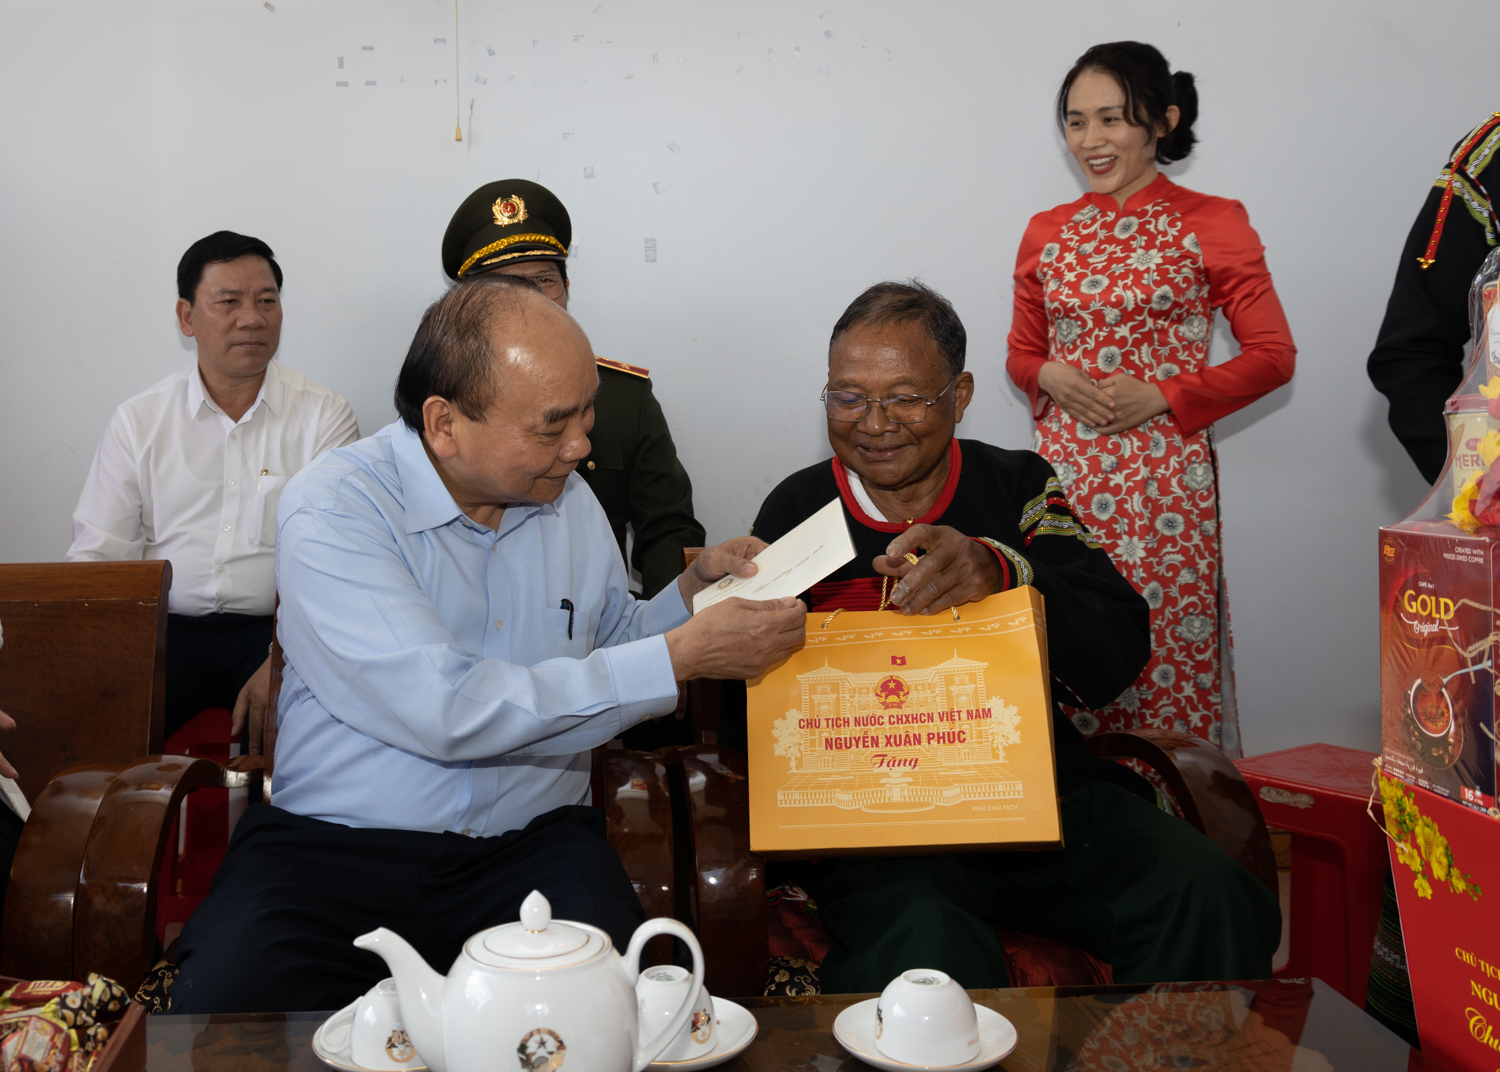 Chủ tịch nước thăm, tặng quà người có hoàn cảnh khó khăn tại Đắk Lắk - Ảnh 5.